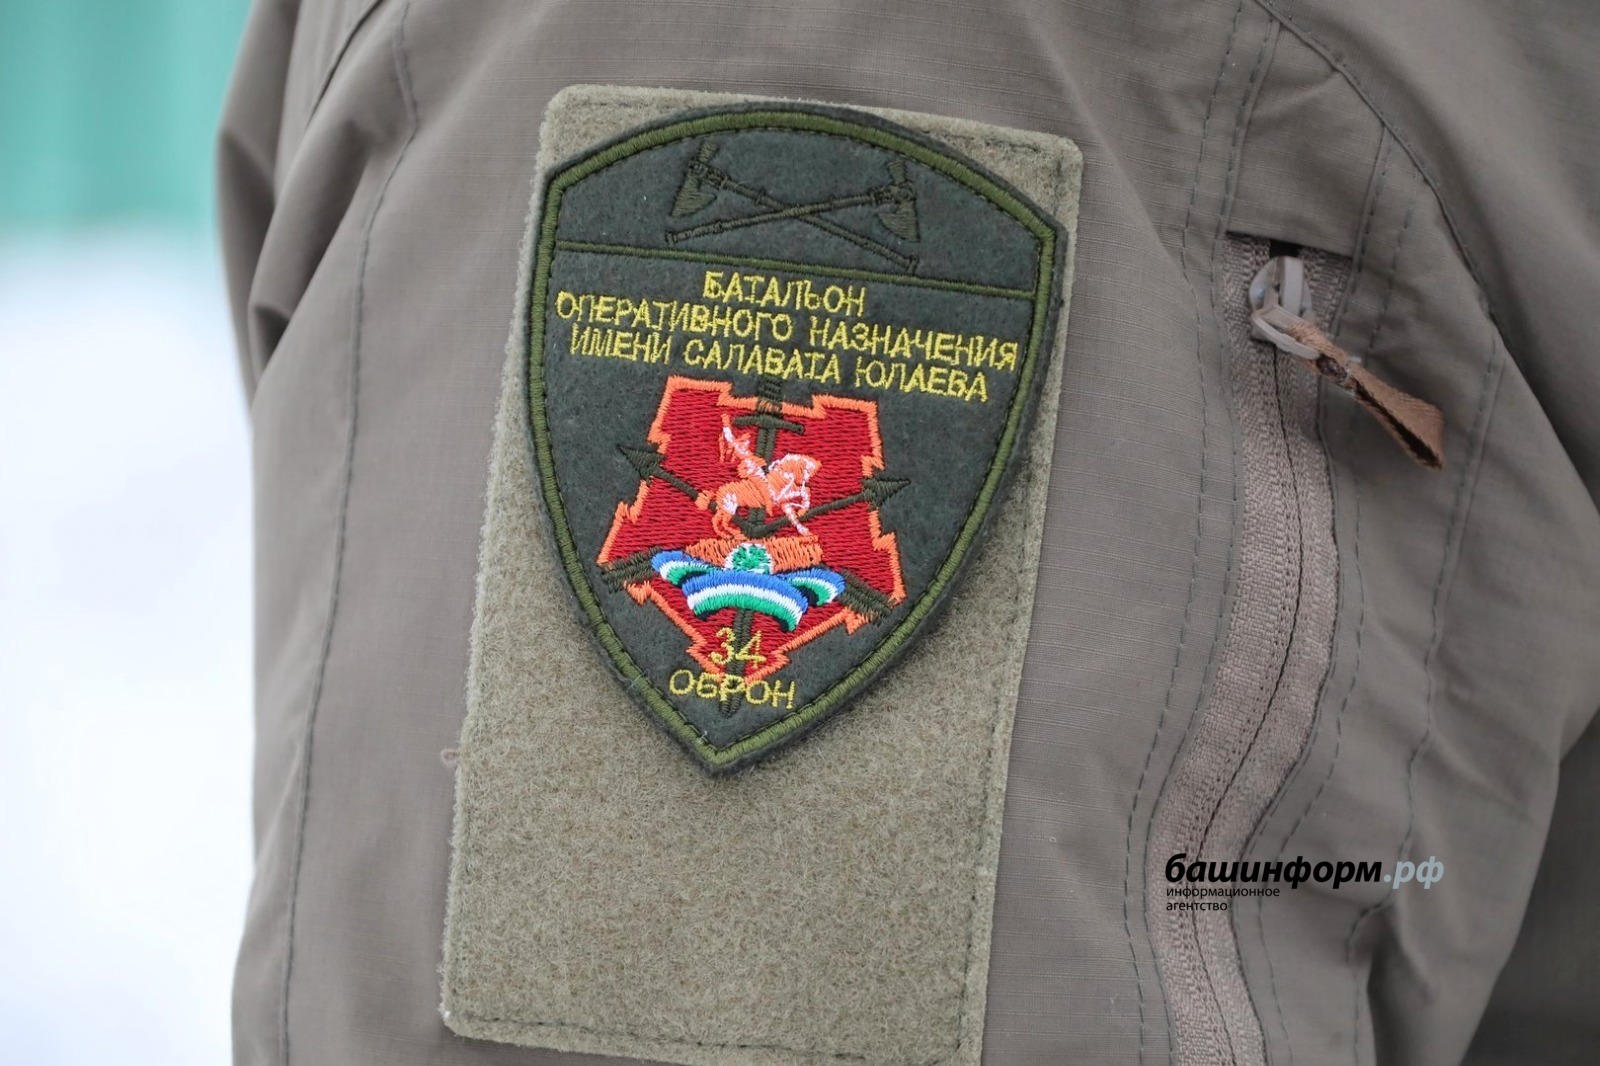 Владимир Путин подписал указ о награждении бойцов добровольческих батальонов Башкирии госнаградами